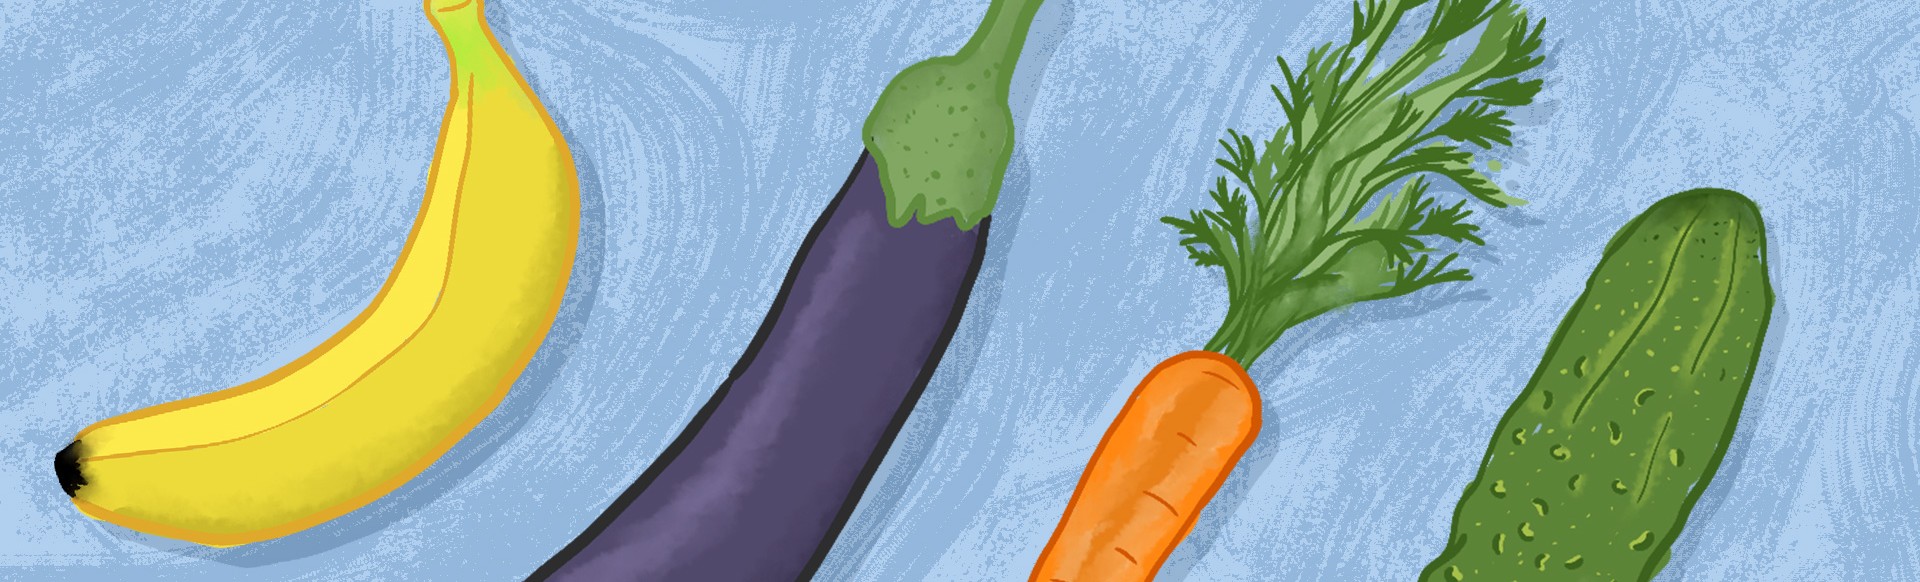 morcov pentru o erecție cea mai buna planta pentru potenta